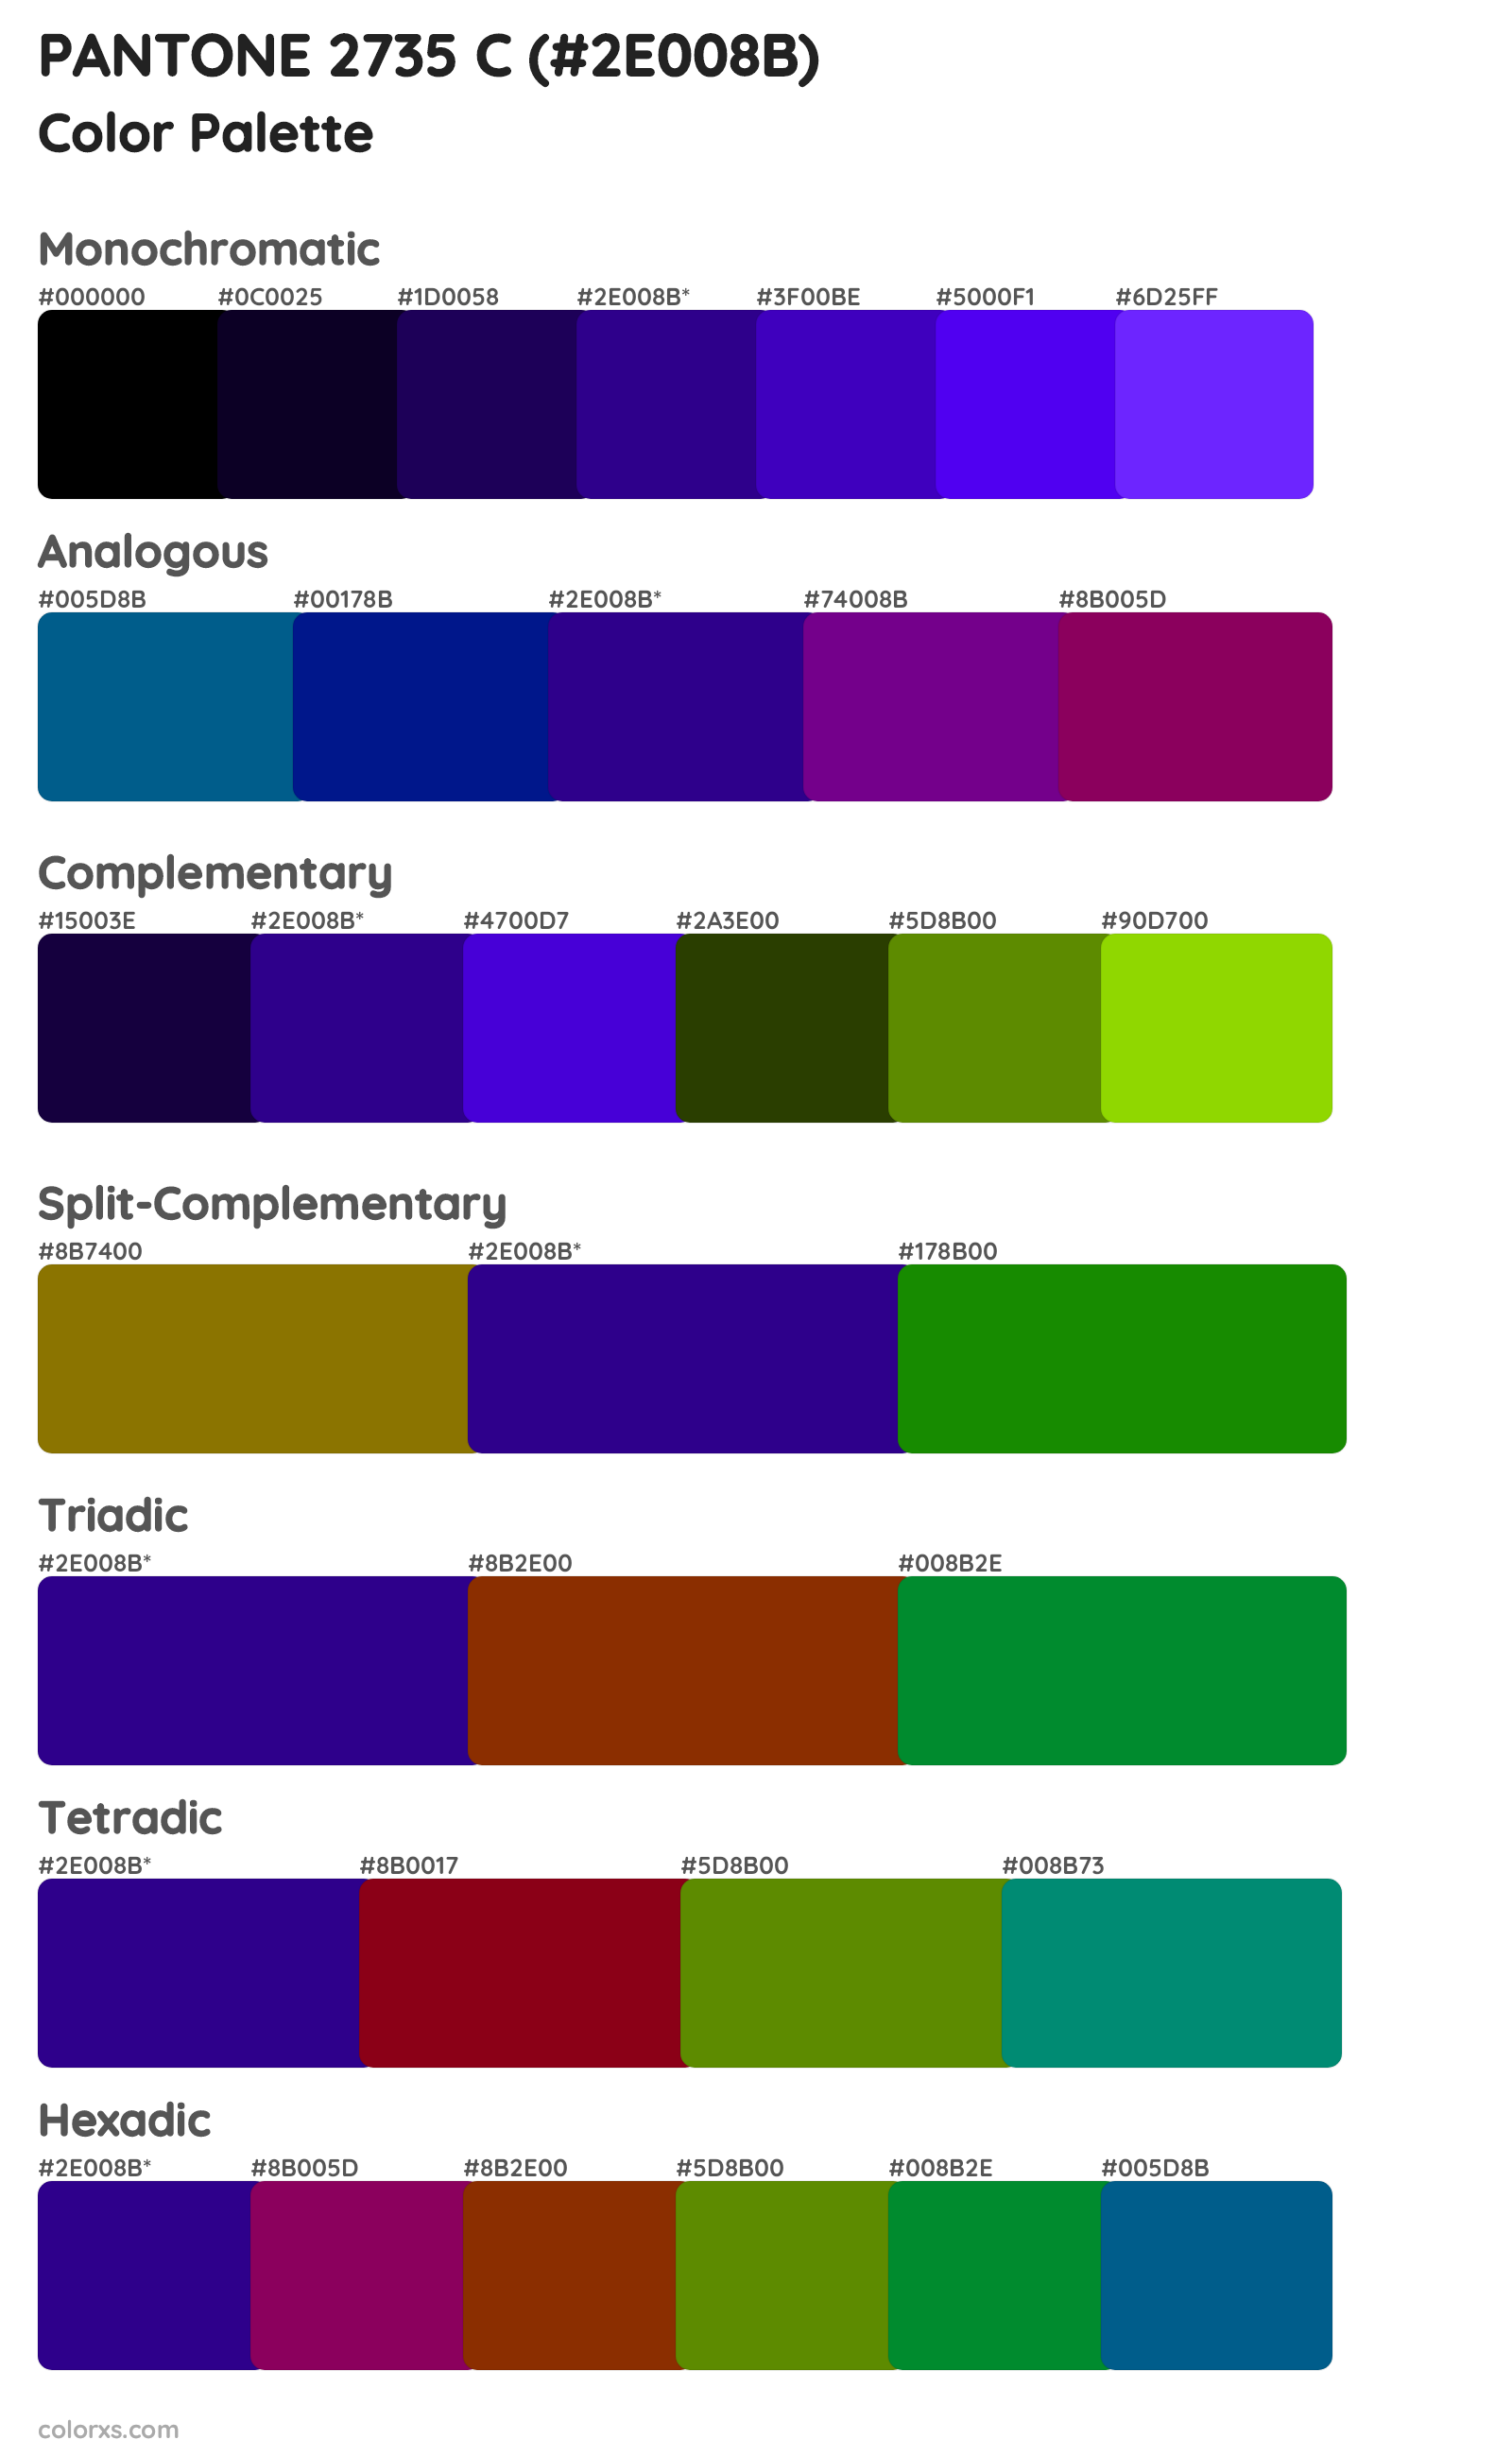 PANTONE 2735 C Color Scheme Palettes